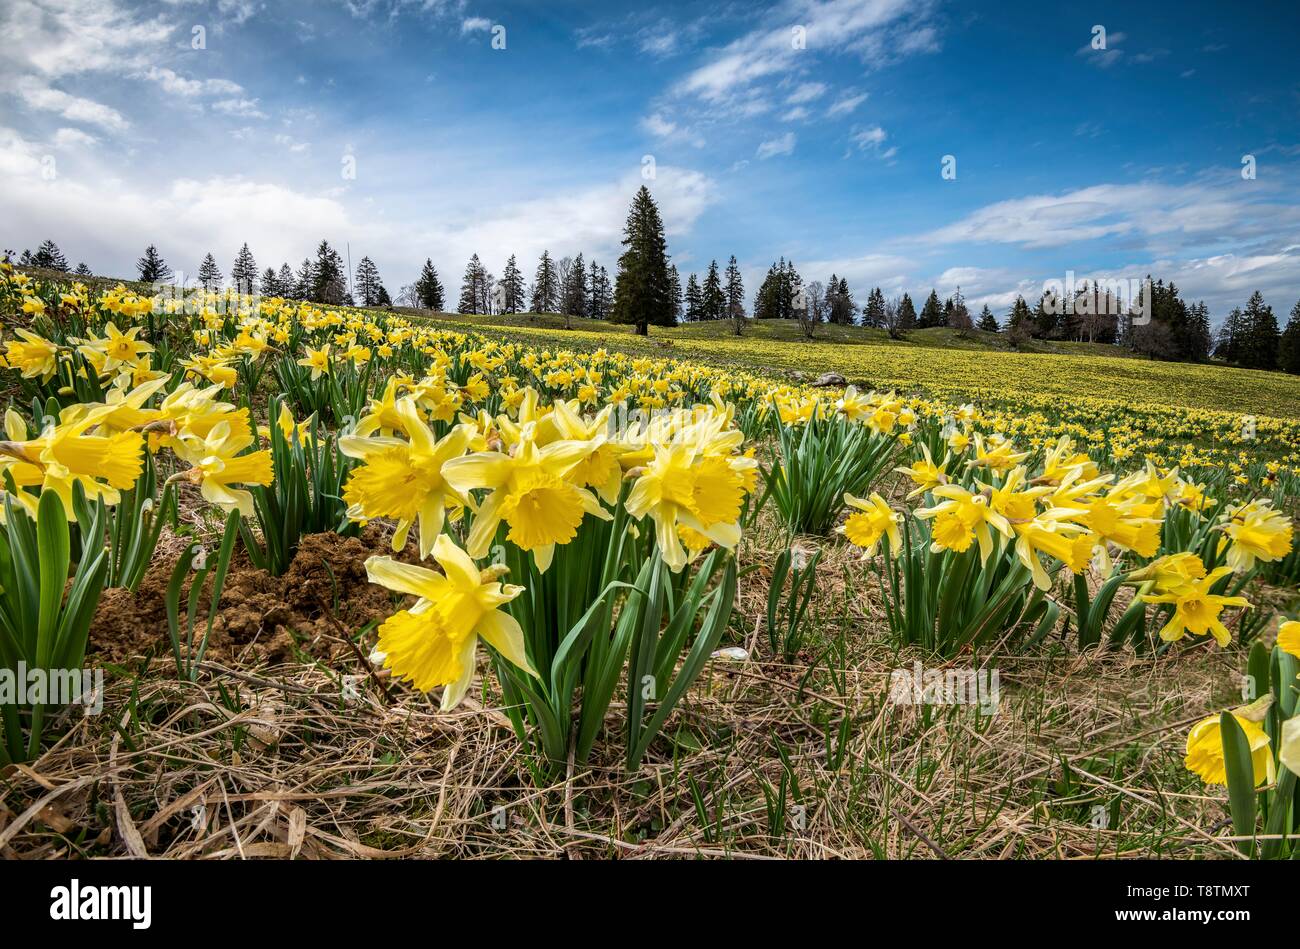 Meer von Blumen mit blühenden gelben Narzissen (Narcissus) in einer Wiese,  Tête de Ran, Vue de Alpes, Schweizer Jura, Kanton Neuenburg, Schweiz  Stockfotografie - Alamy